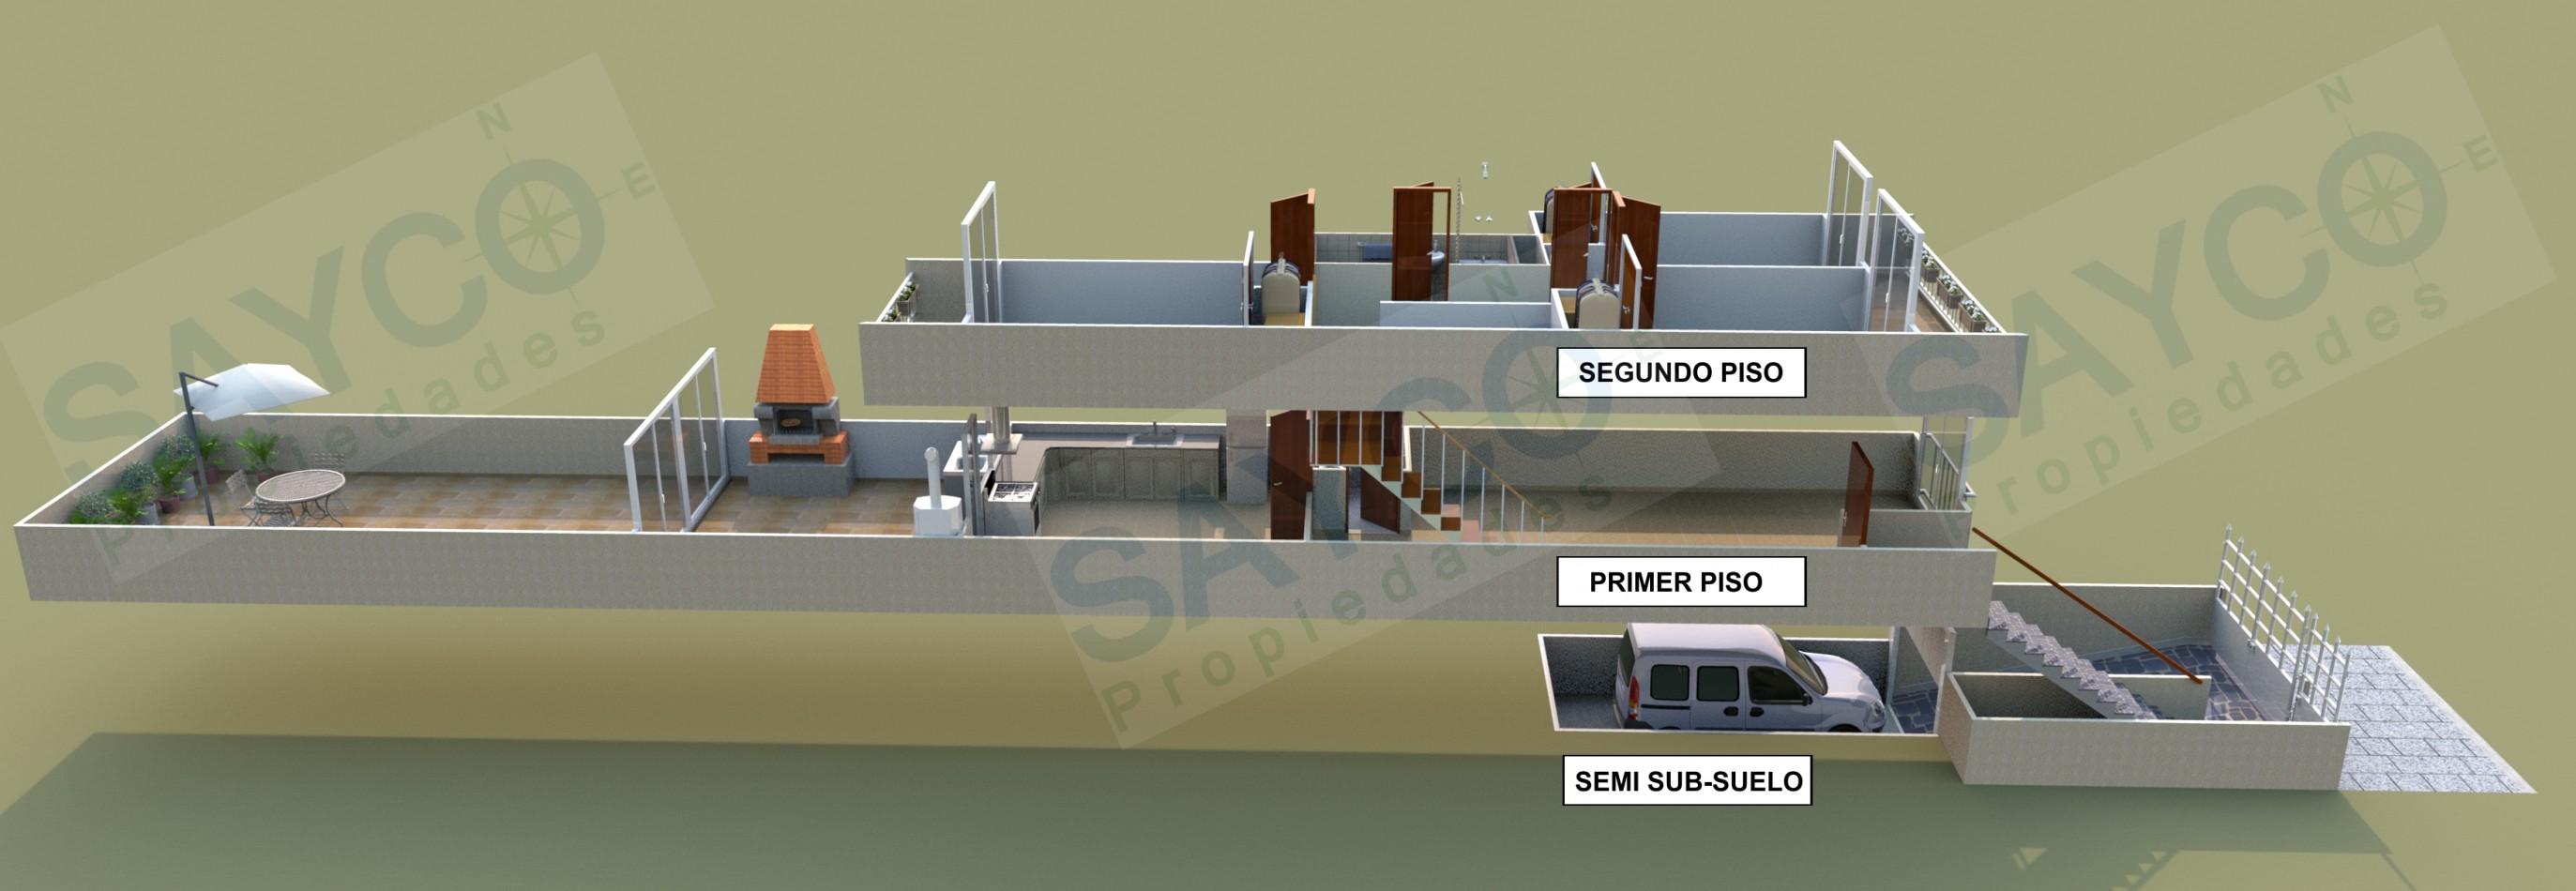 Duplex 4 Ambientes + Cochera + Fondo (4 X 12) + Parrilla + Balcon 